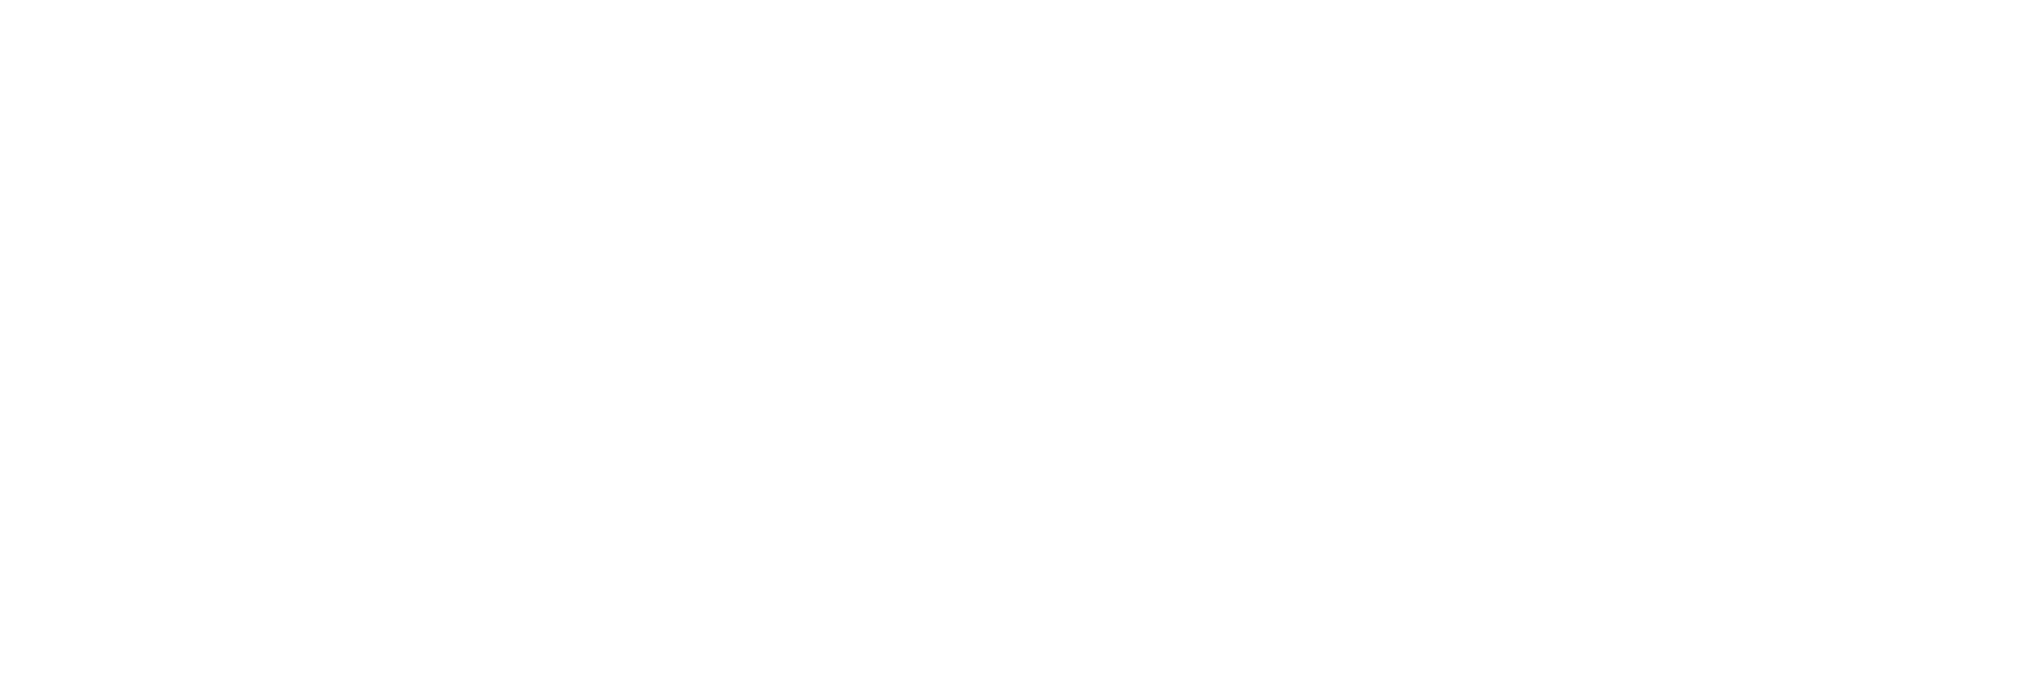 Sociedad y Religión